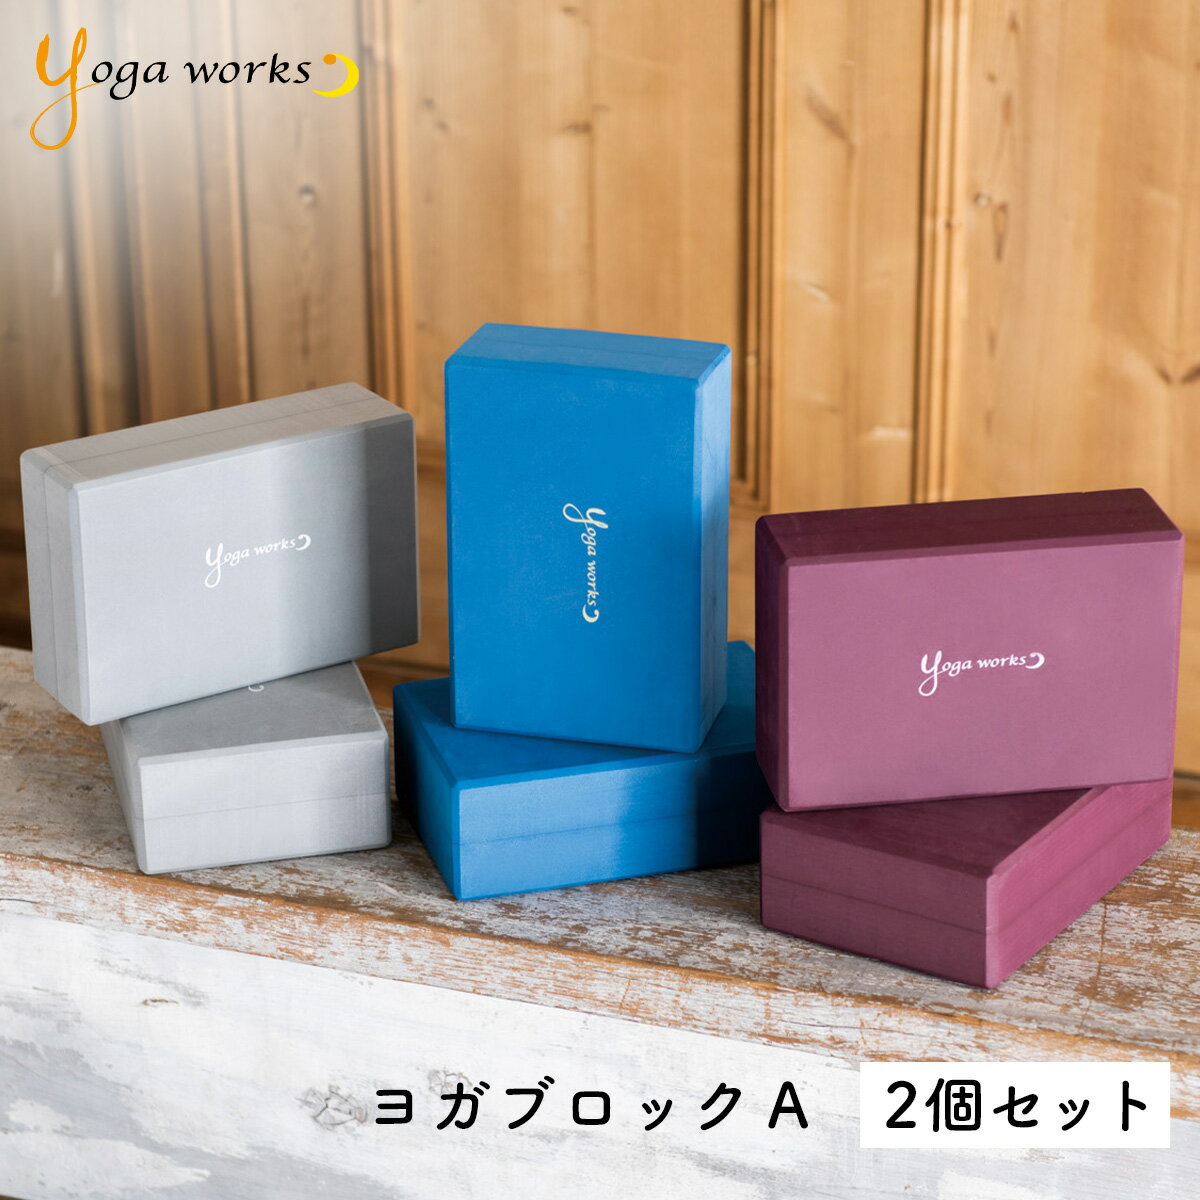 ヨガワークス ヨガブロックA 2個セット yogaworks【ヨガワークス ブロック プロップス ポ ...